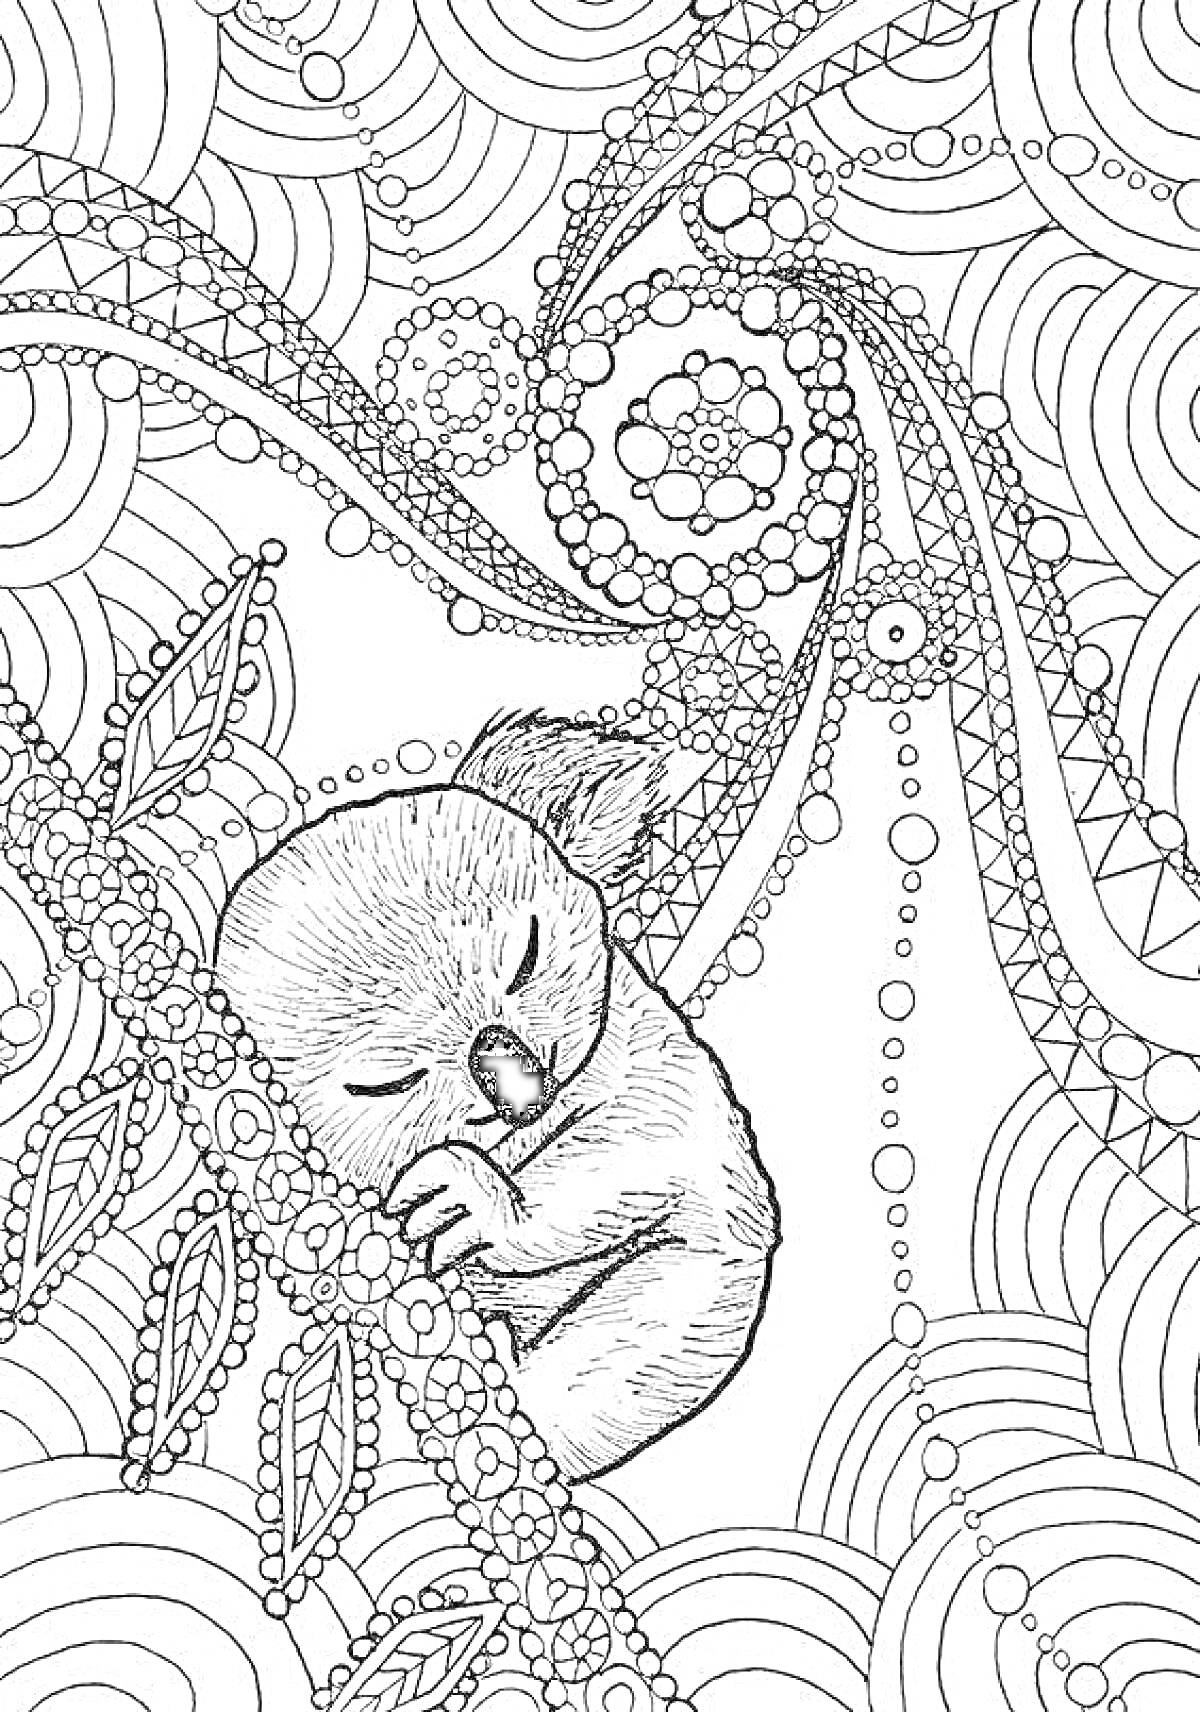 Раскраска Спящий коала на ветке в окружении абстрактных узоров